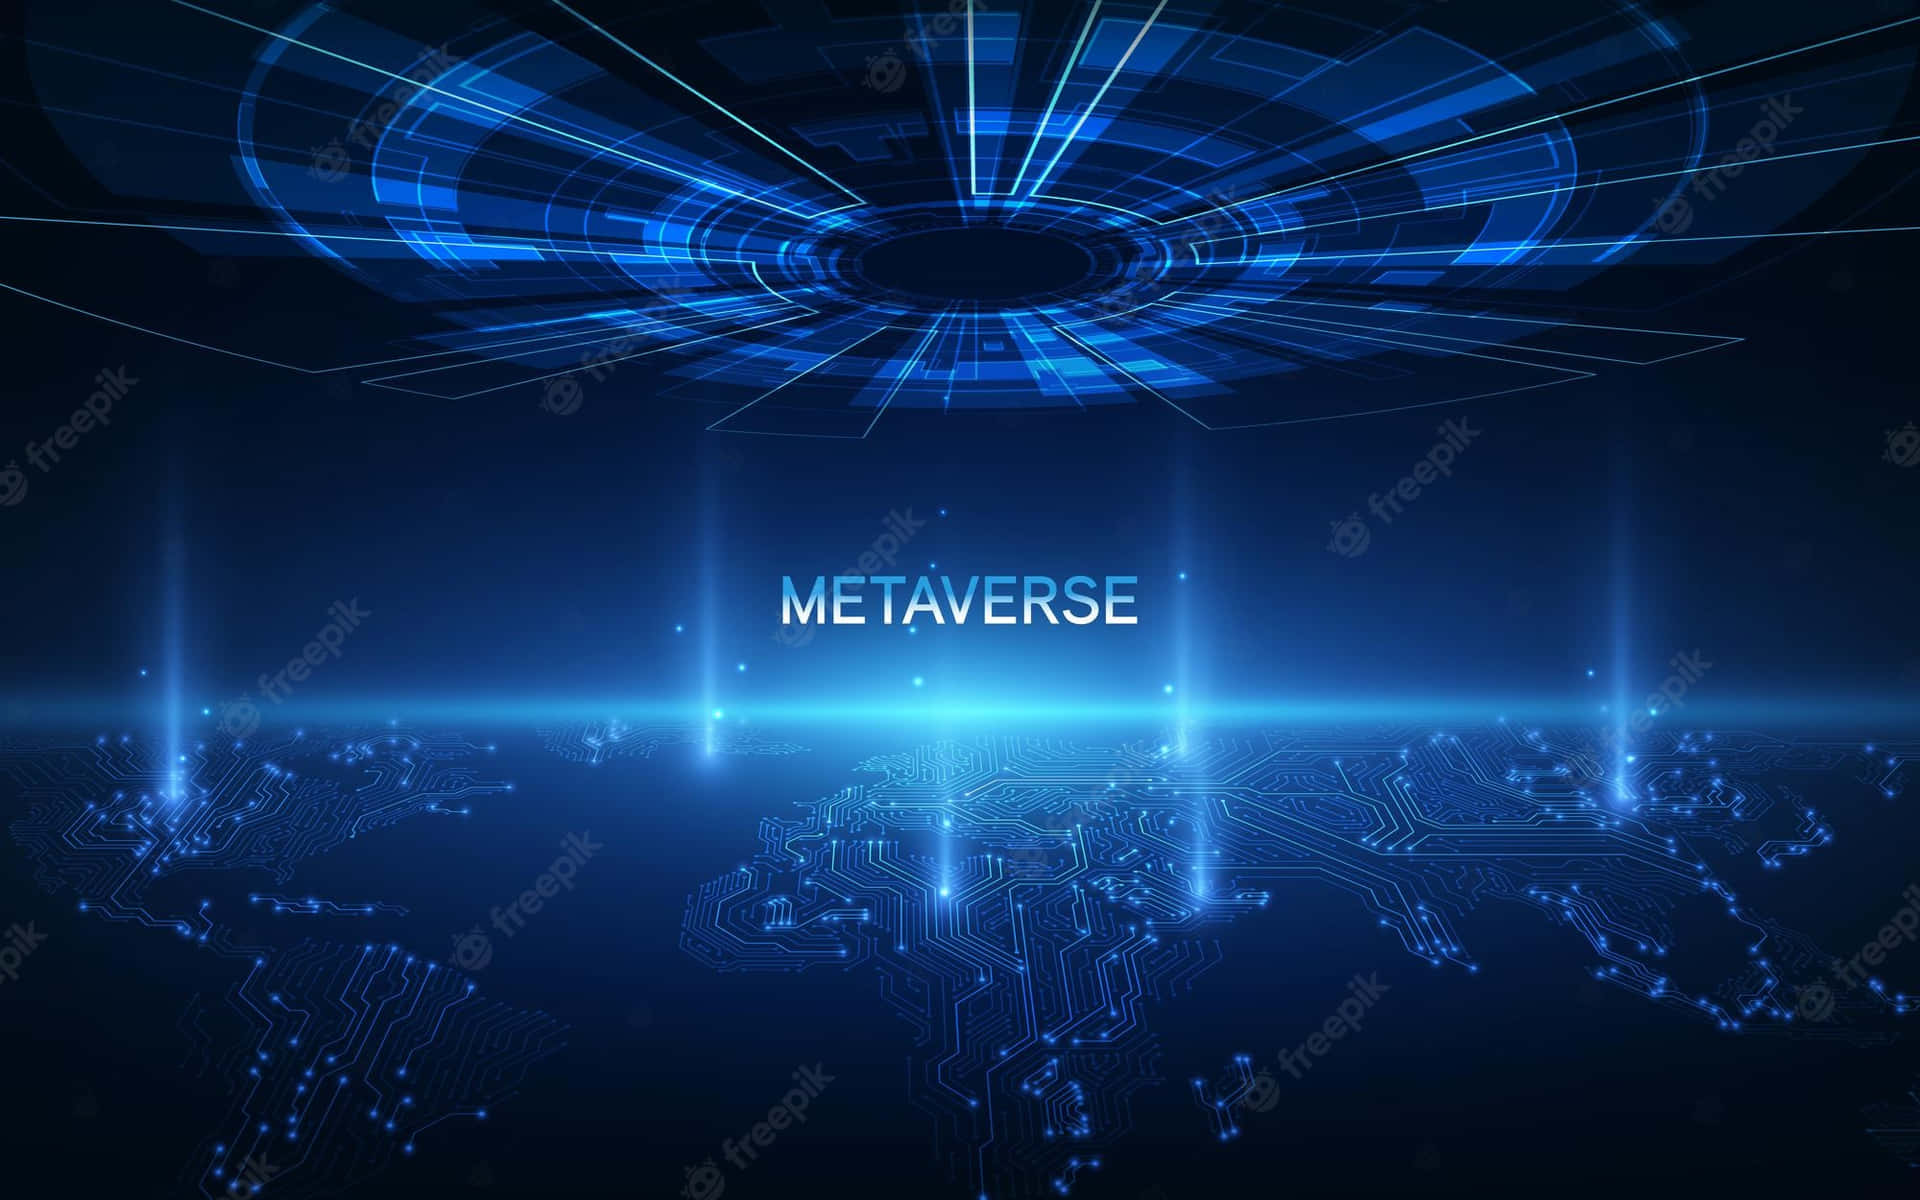 这张图片展示了一个以“METAVERSE”为中心的数字化主题图形，蓝色调，具有高科技感，呈现出虚拟现实或数字宇宙的概念。